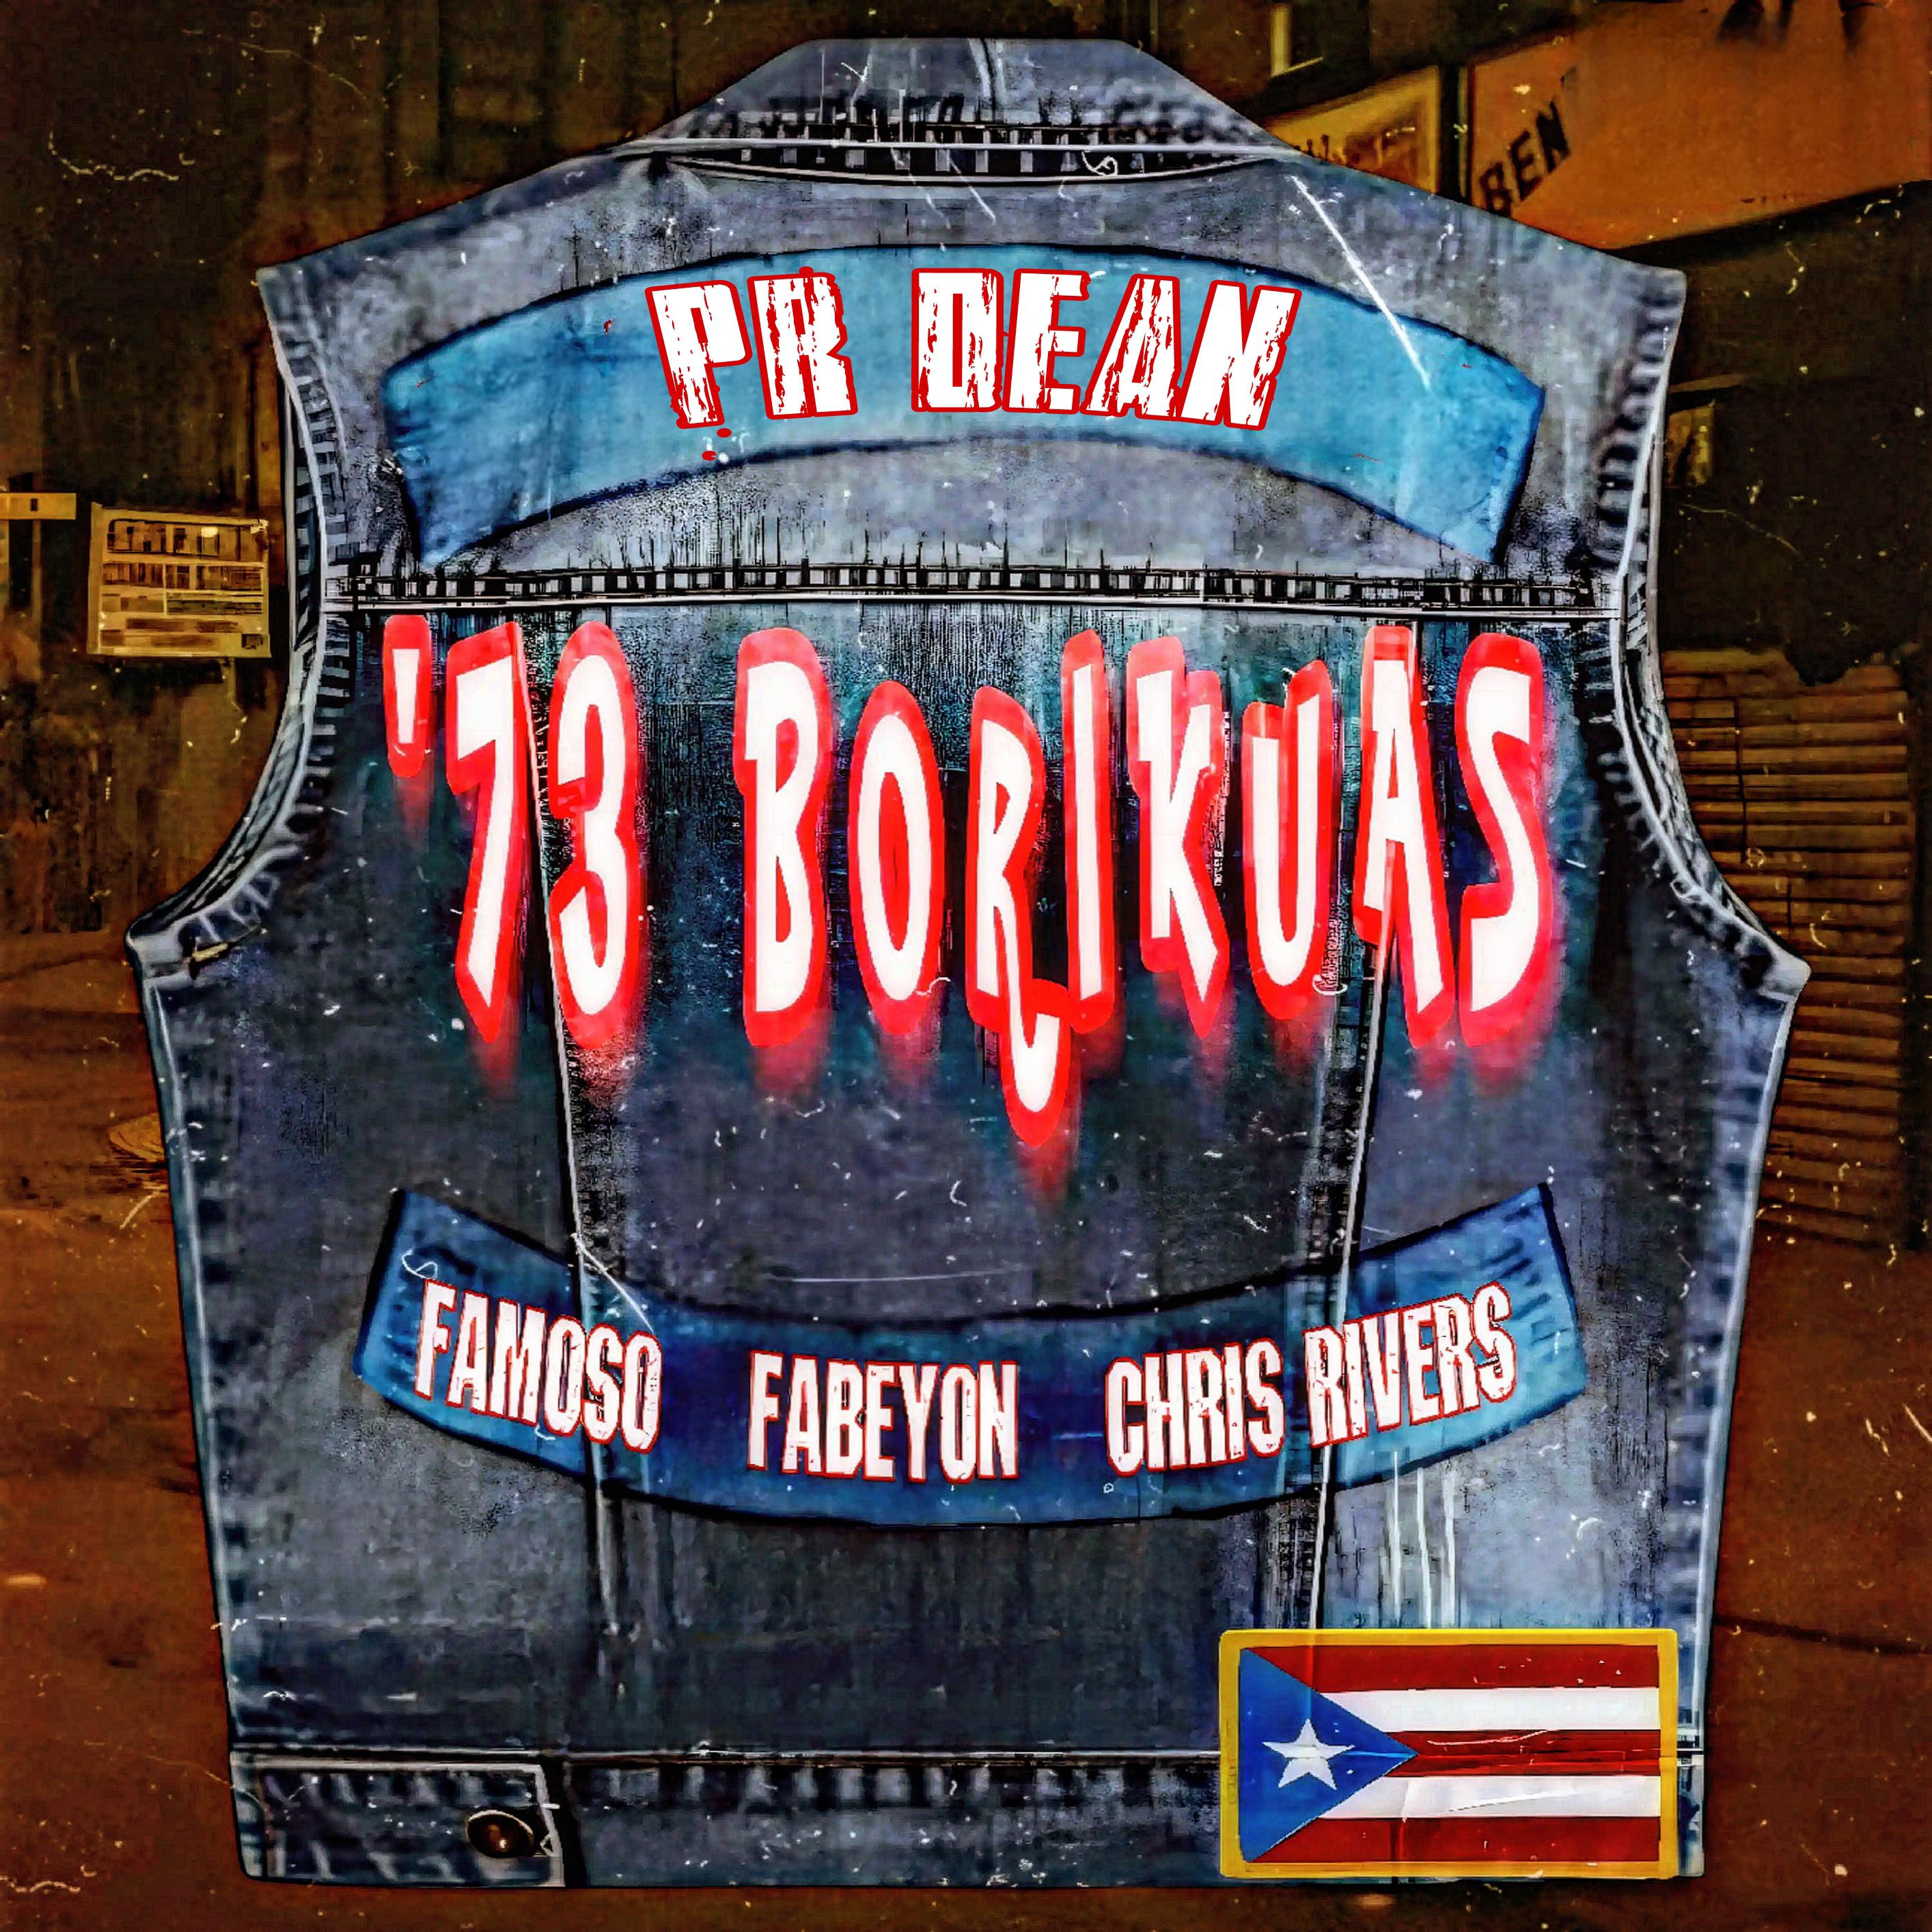 PR Dean - '73 Borikuas